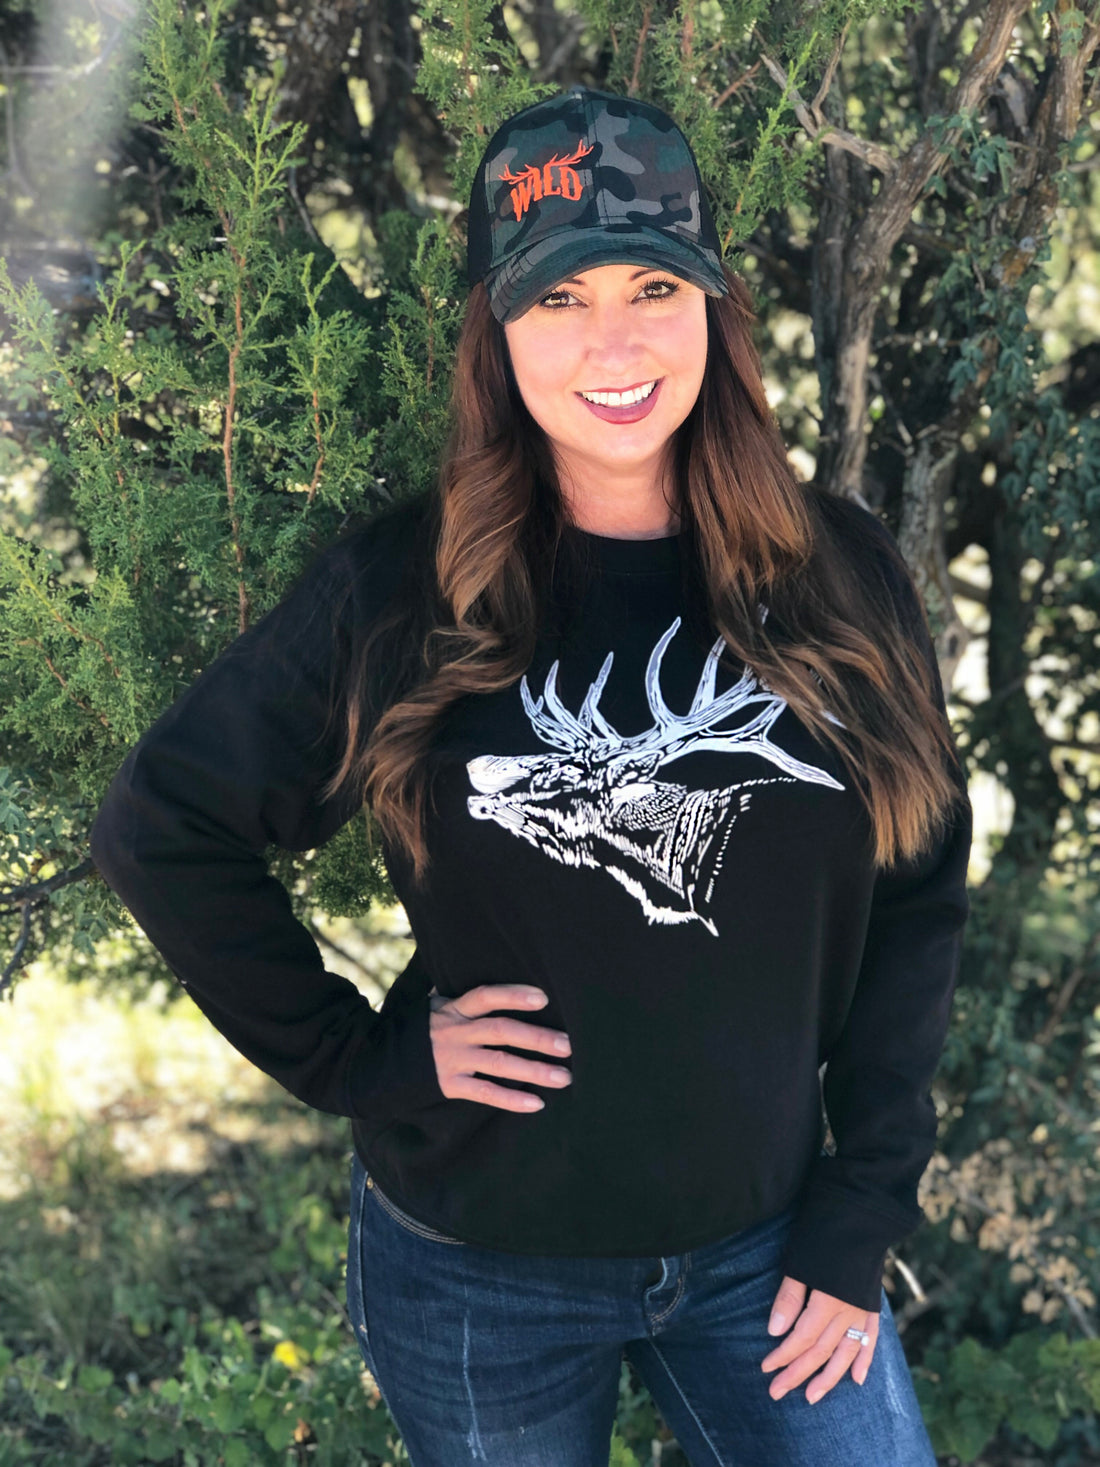  Woman in Elk Sweatshirt in Black in Woods with WILD Camo Hat on 